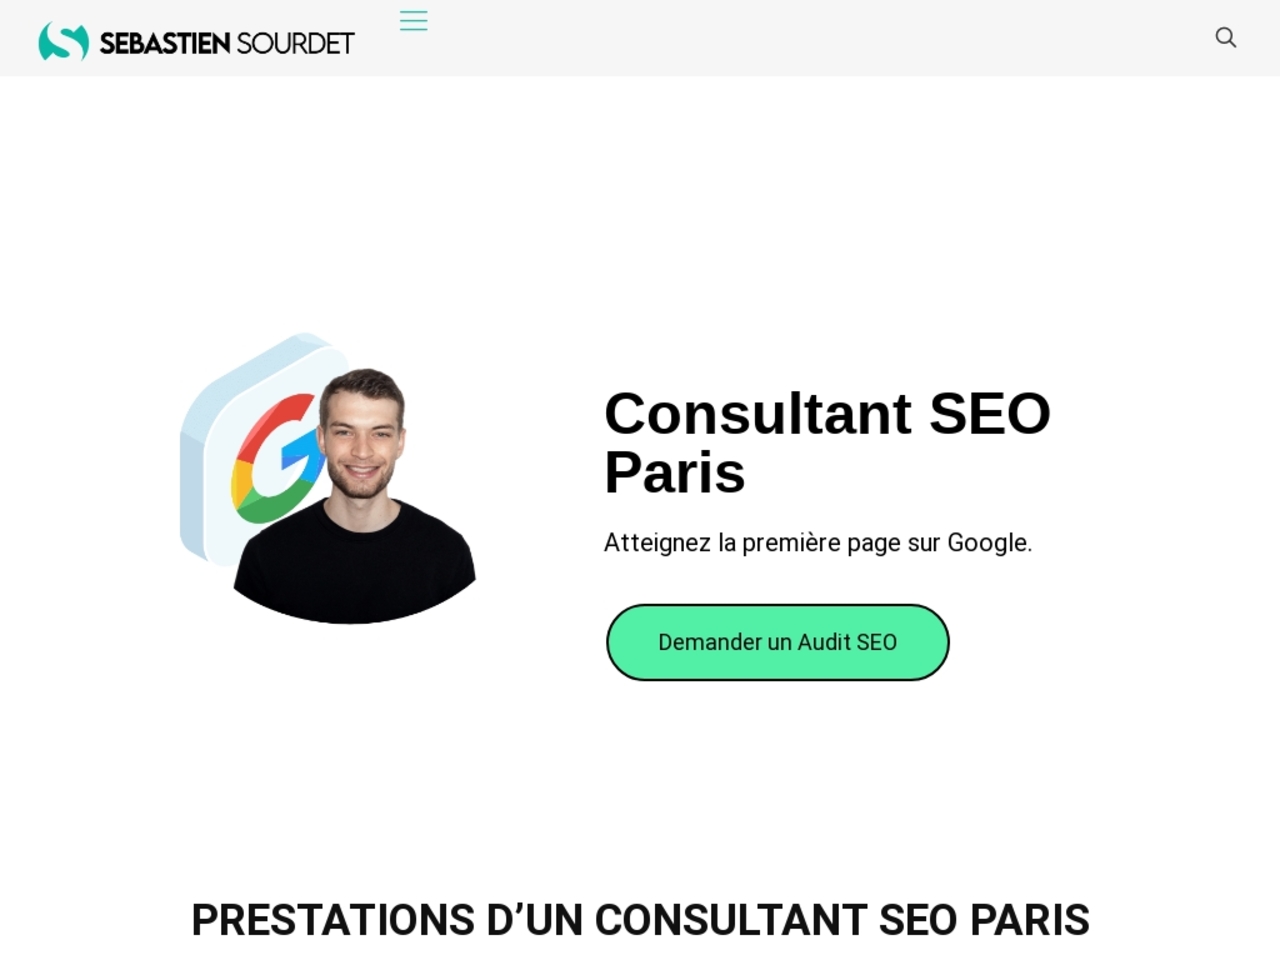 Sebastien Sourdet, Consultant SEO Paris